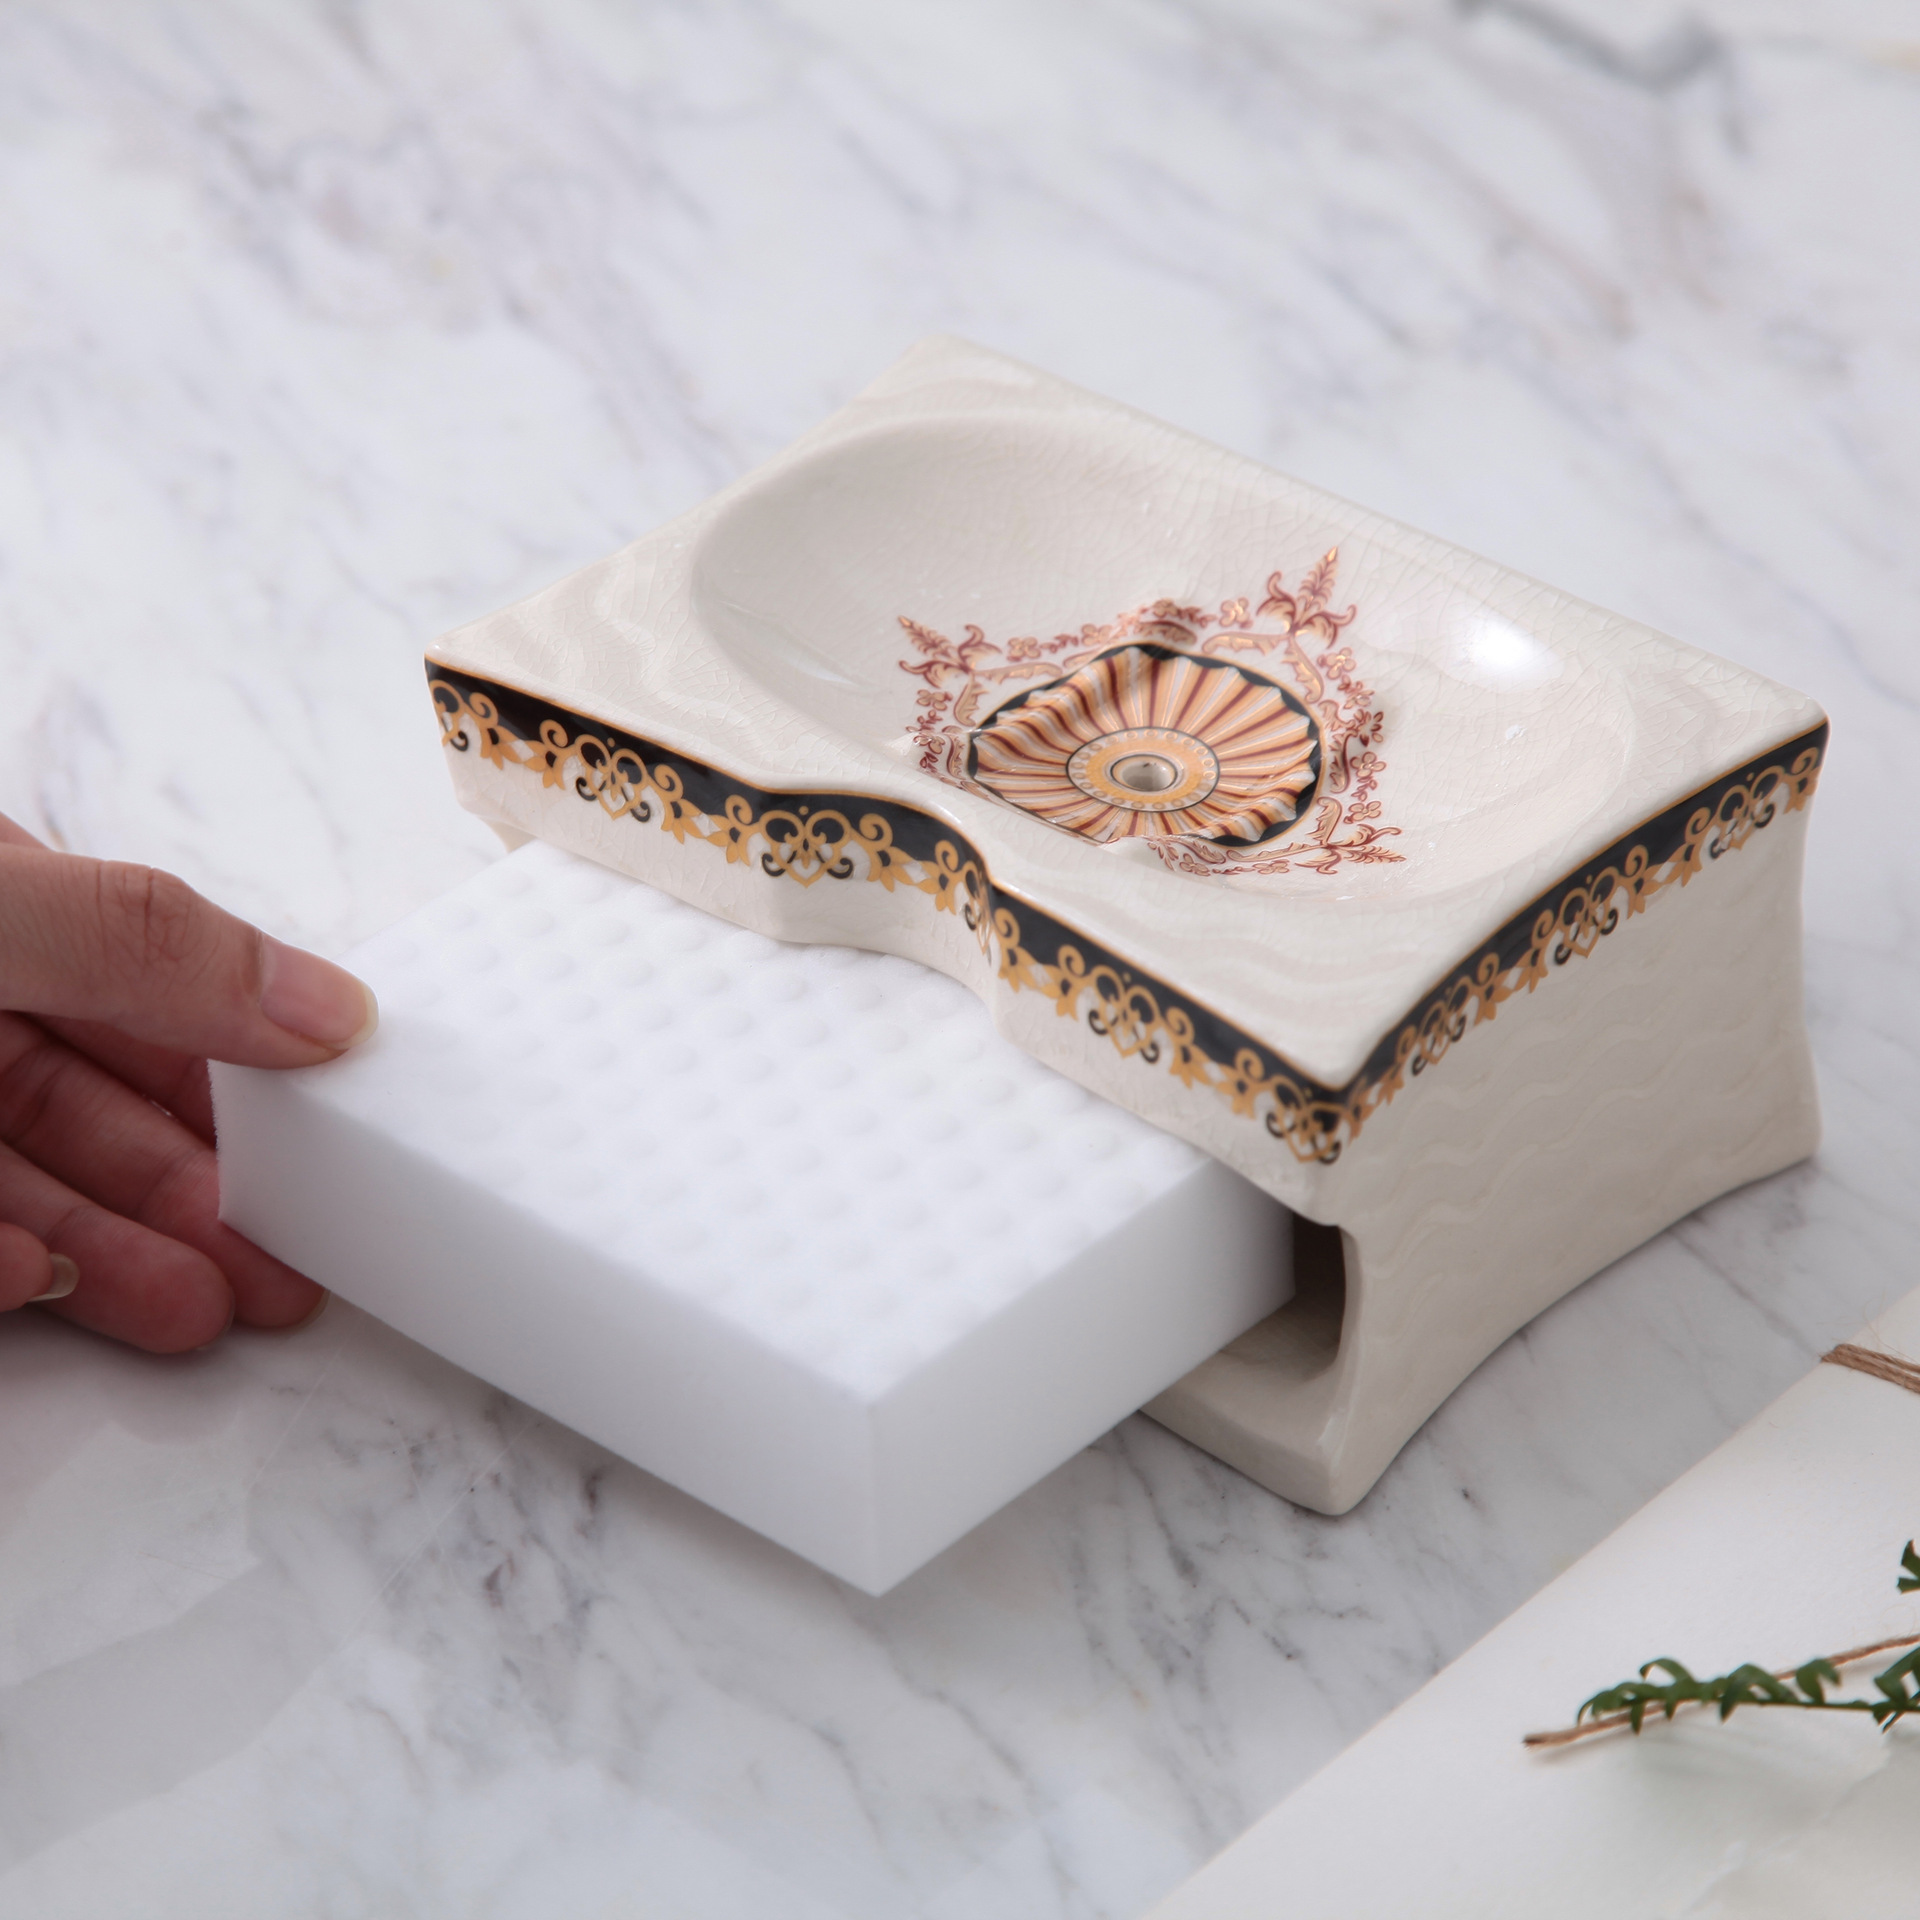 厂家直销 创意陶瓷双层海绵肥皂盒 吸水海绵香皂盒 浴室手工皂碟|ru